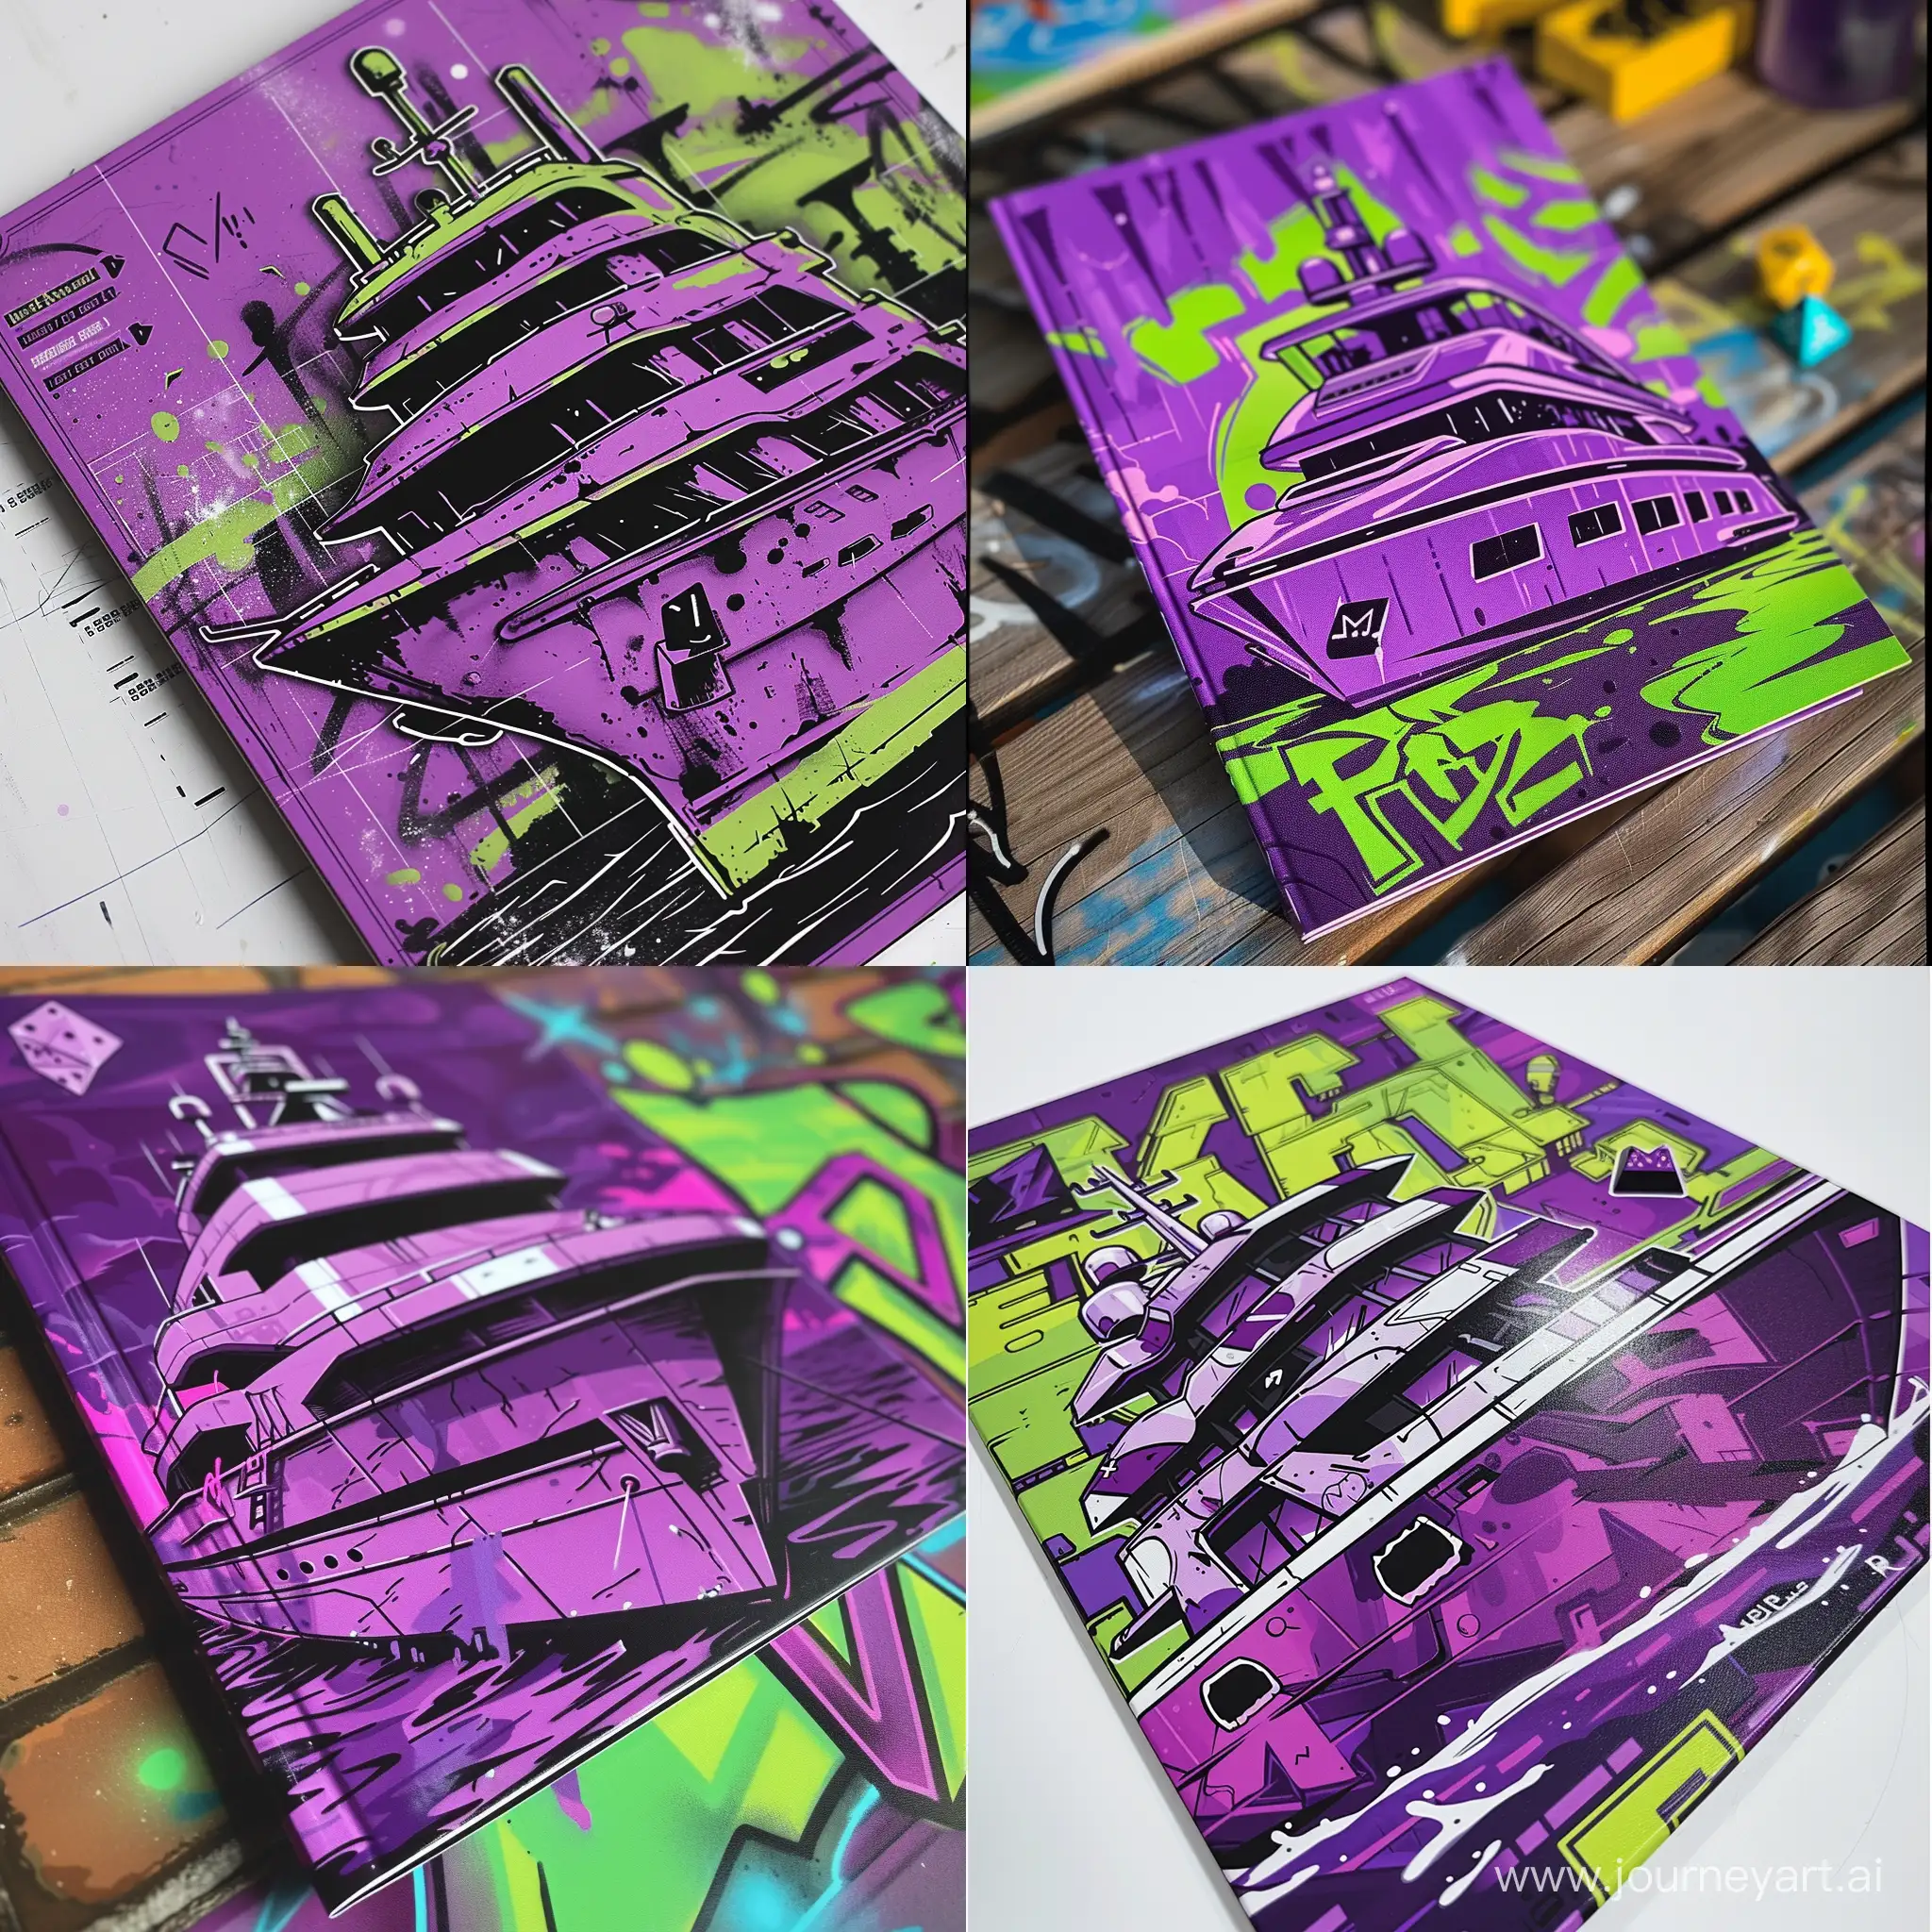 придумай дизайн буклета правил к настольной игре в кости с изображениями яхты в фиолетовых и кислотно зеленом цвете в стиле граффити